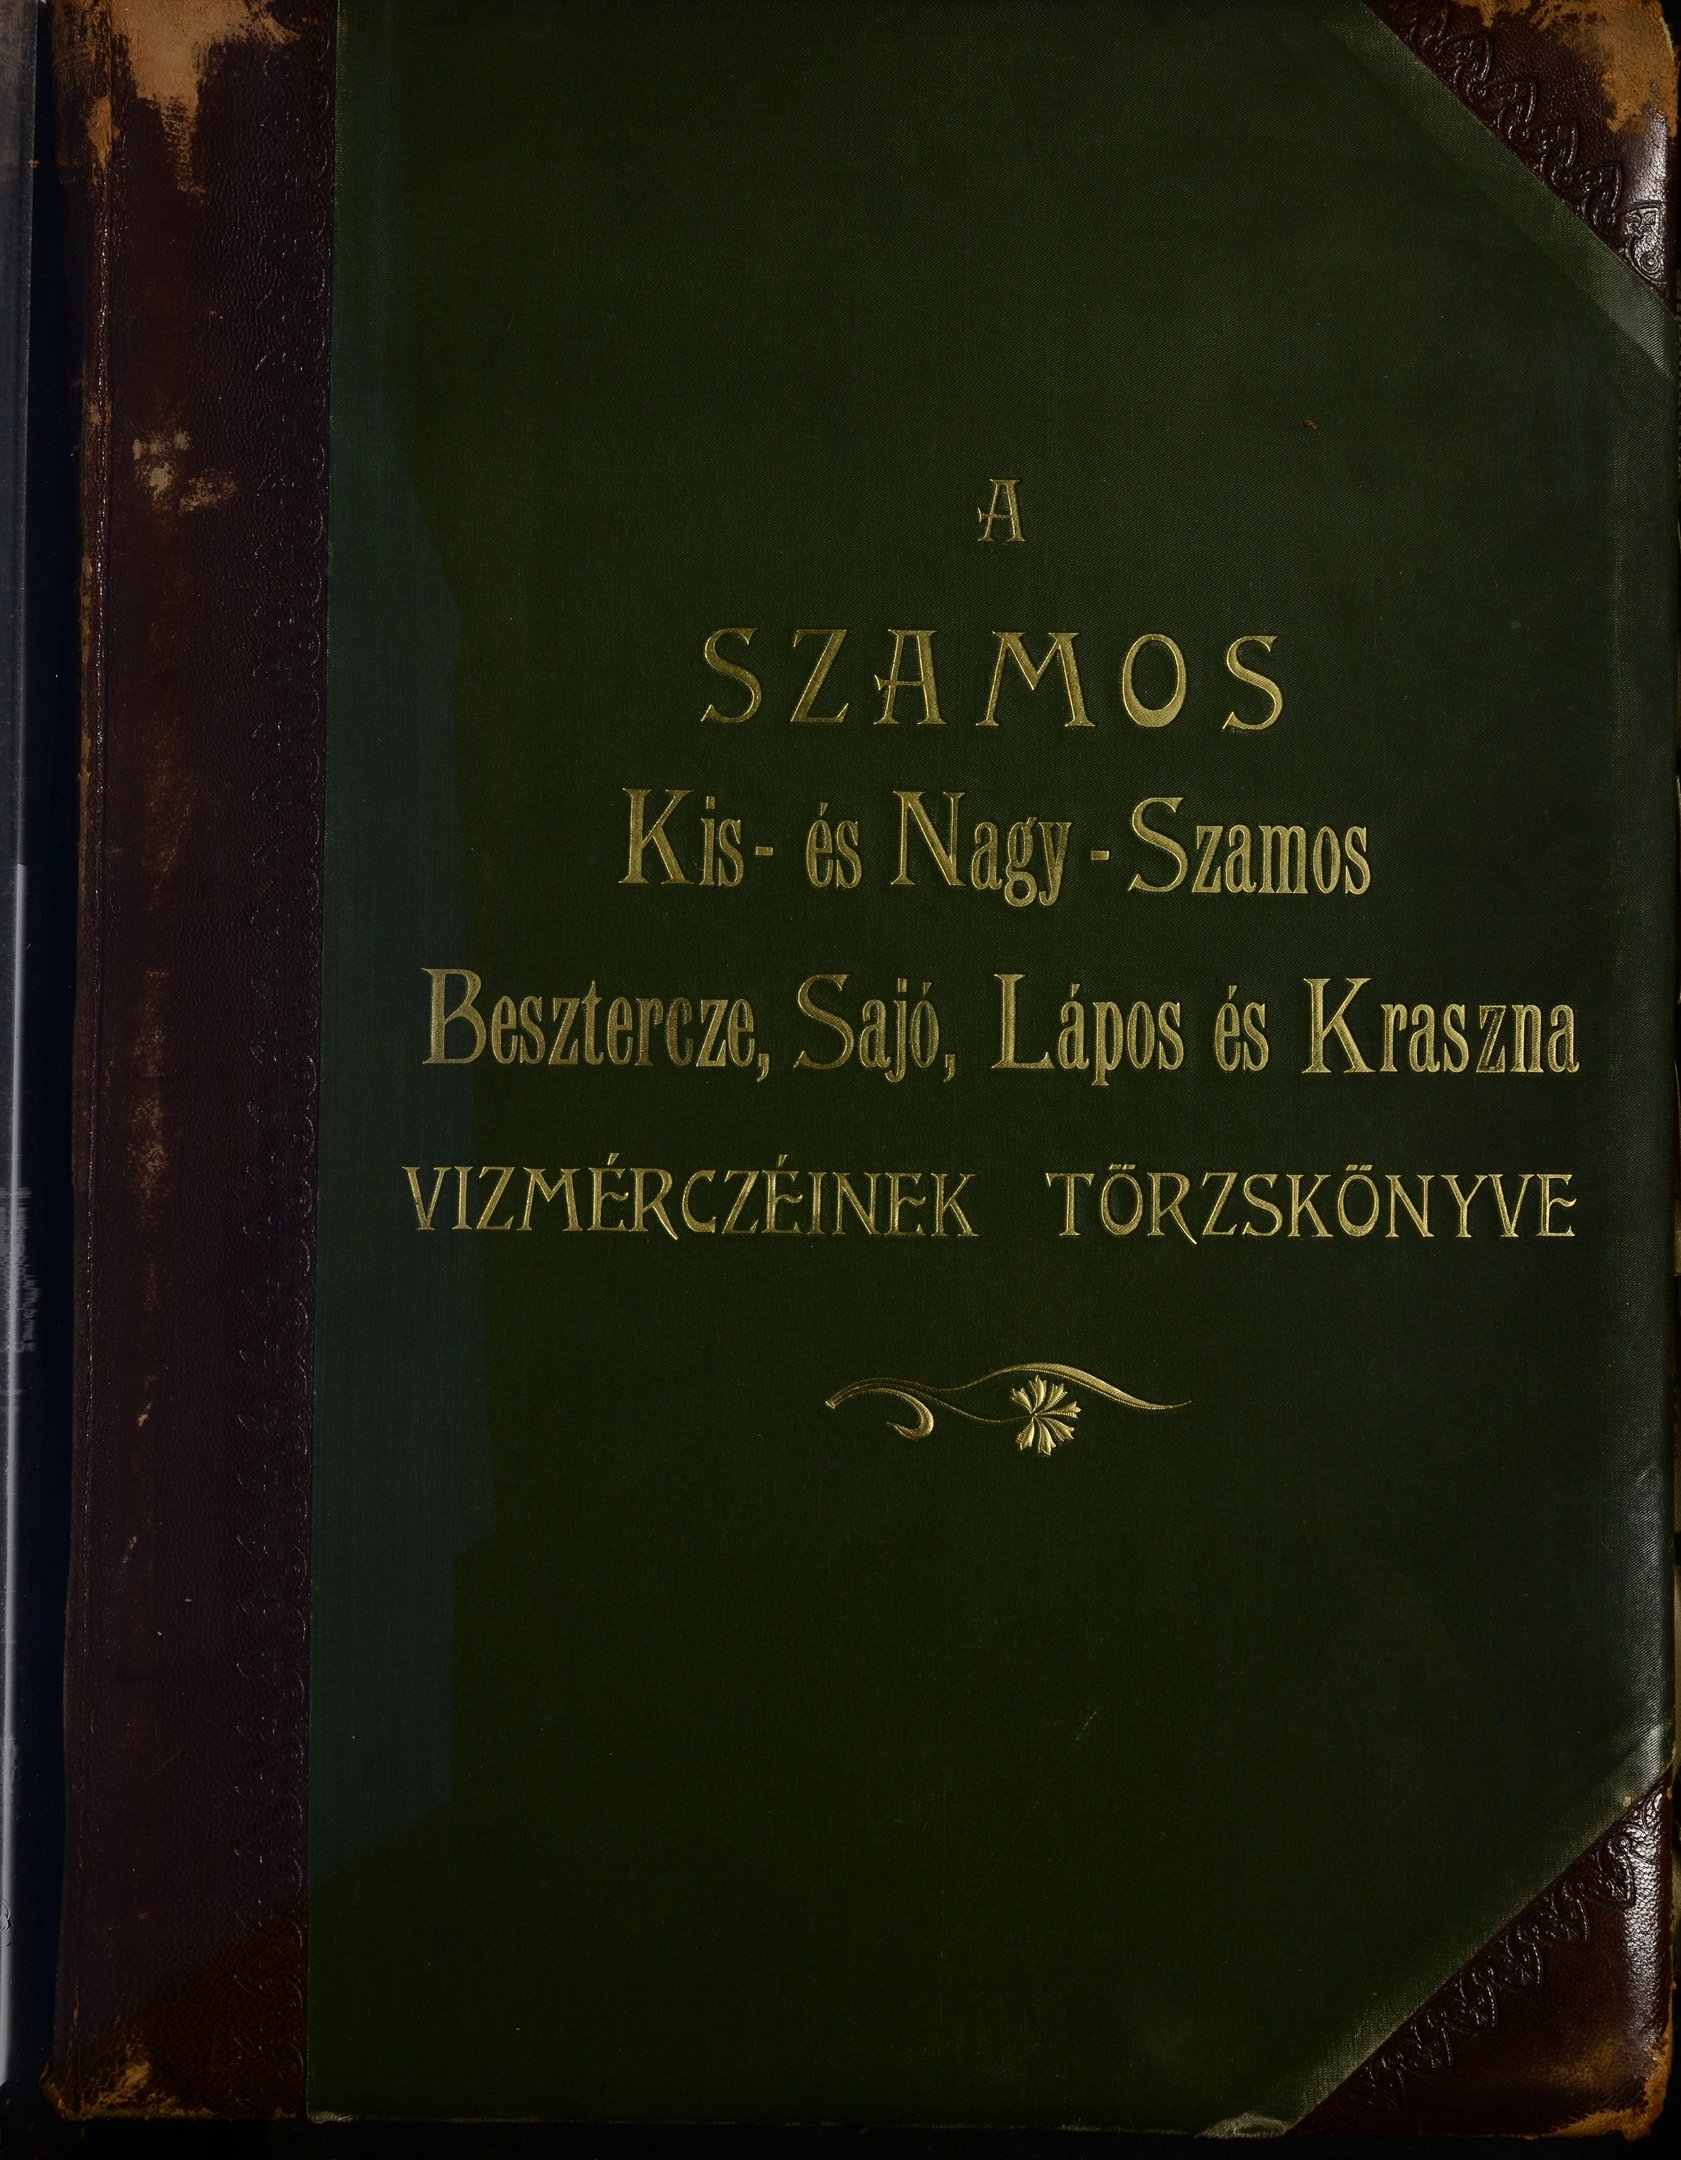 A Szamos Kis- és Nagy-Szamos, Beszterce, Sajó, Lápos és Kraszna vízmércéinek törzskönyve (Magyar Környezetvédelmi és Vízügyi Múzeum - Duna Múzeum CC BY-NC-SA)